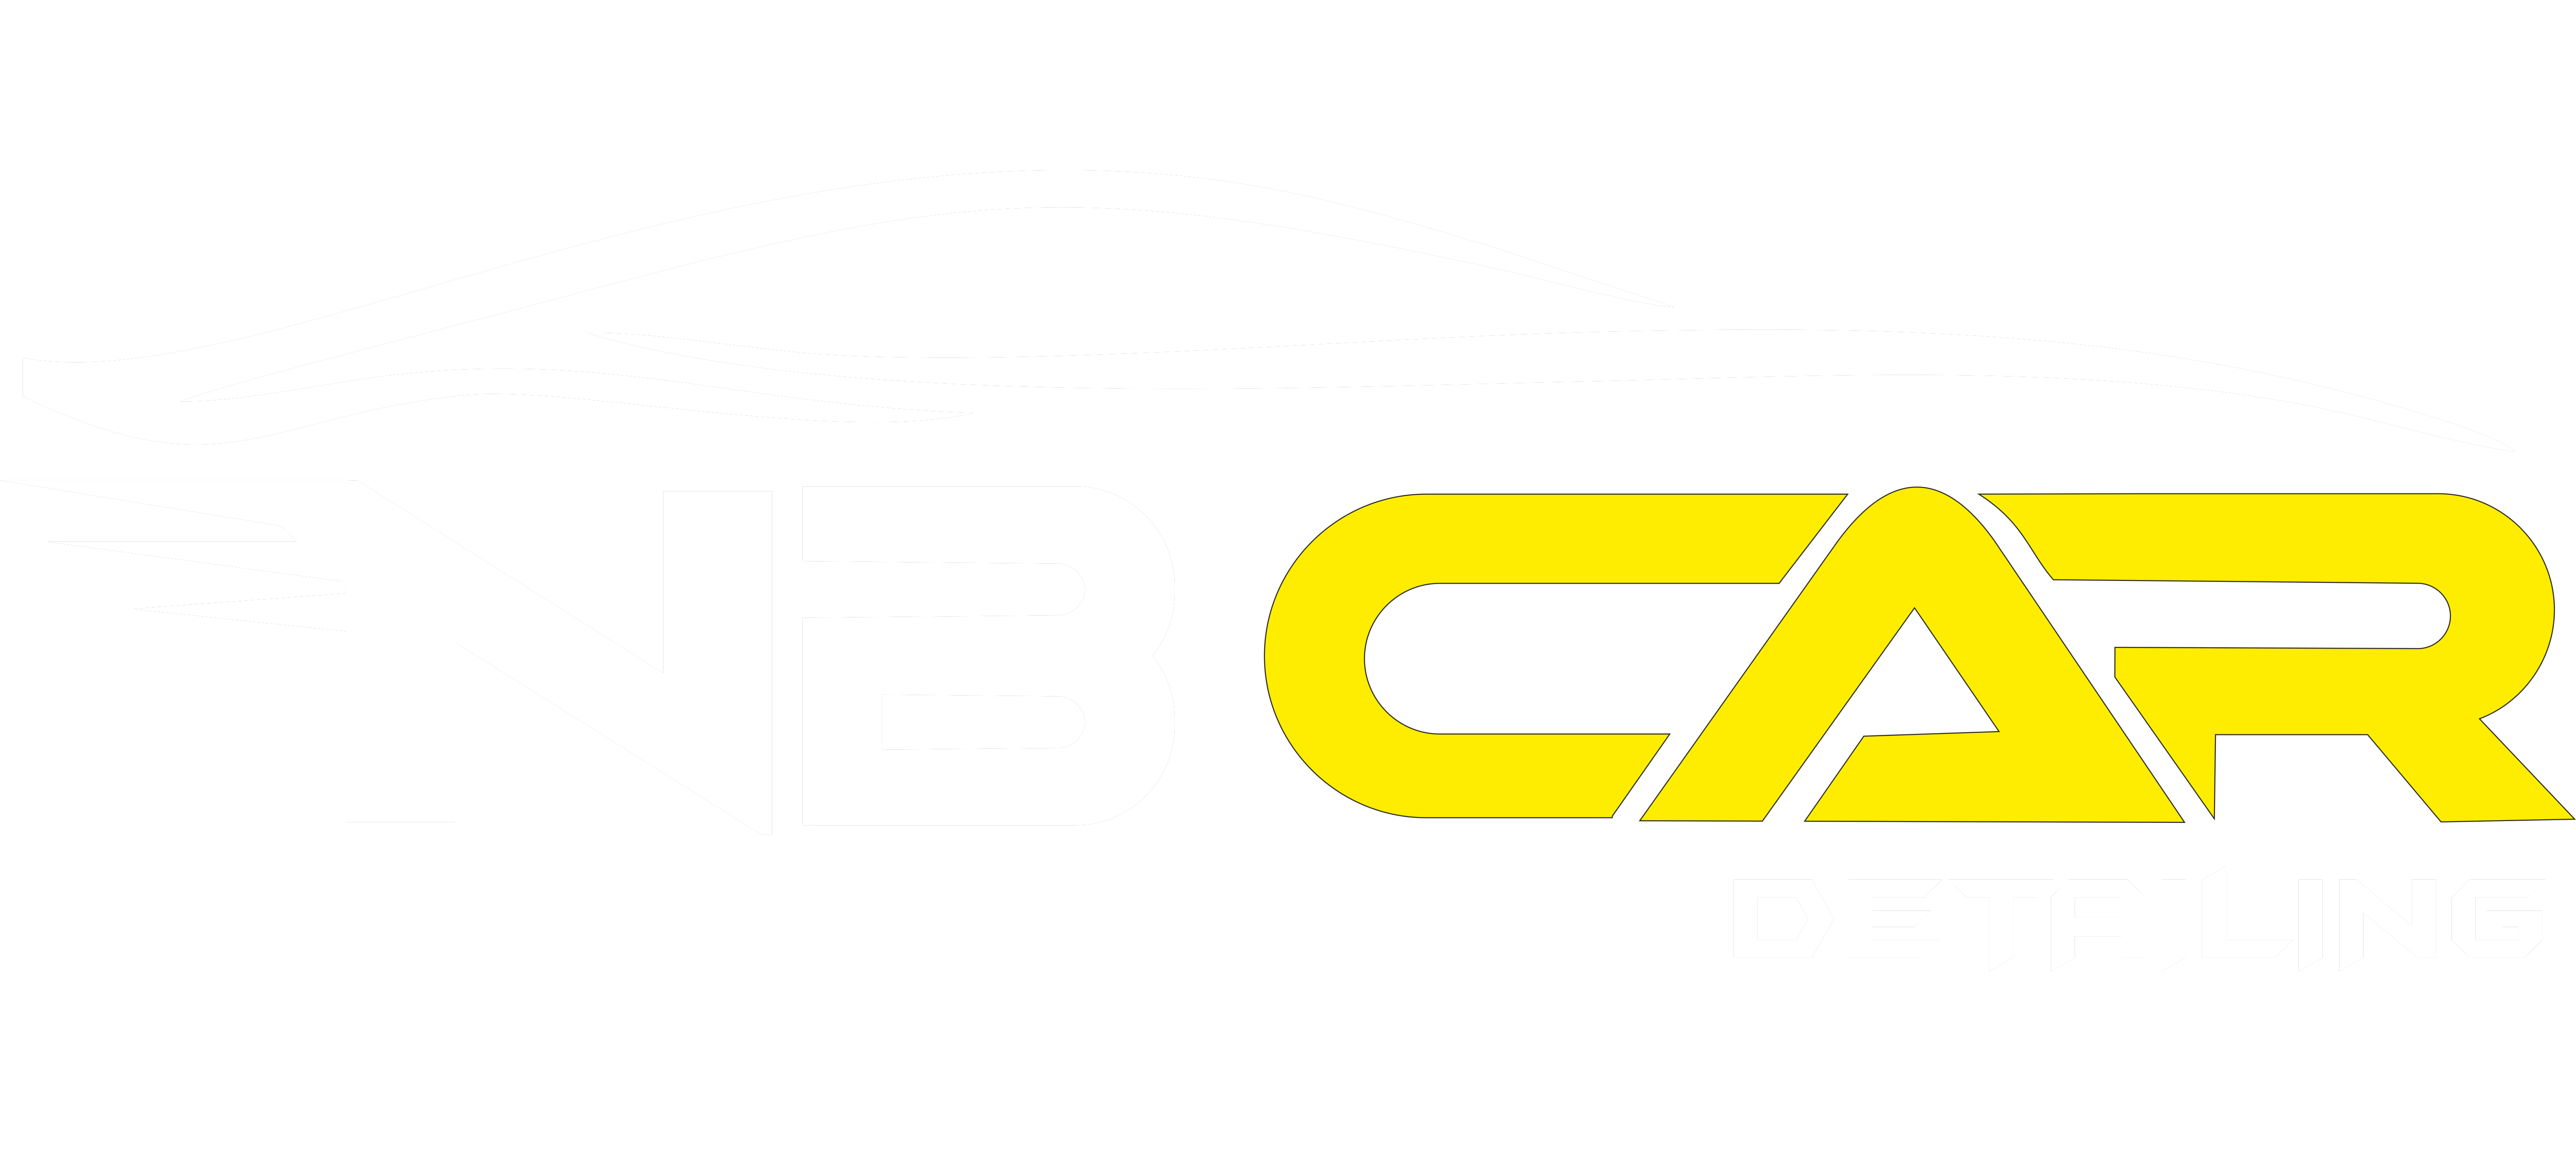 NB Car Detailing